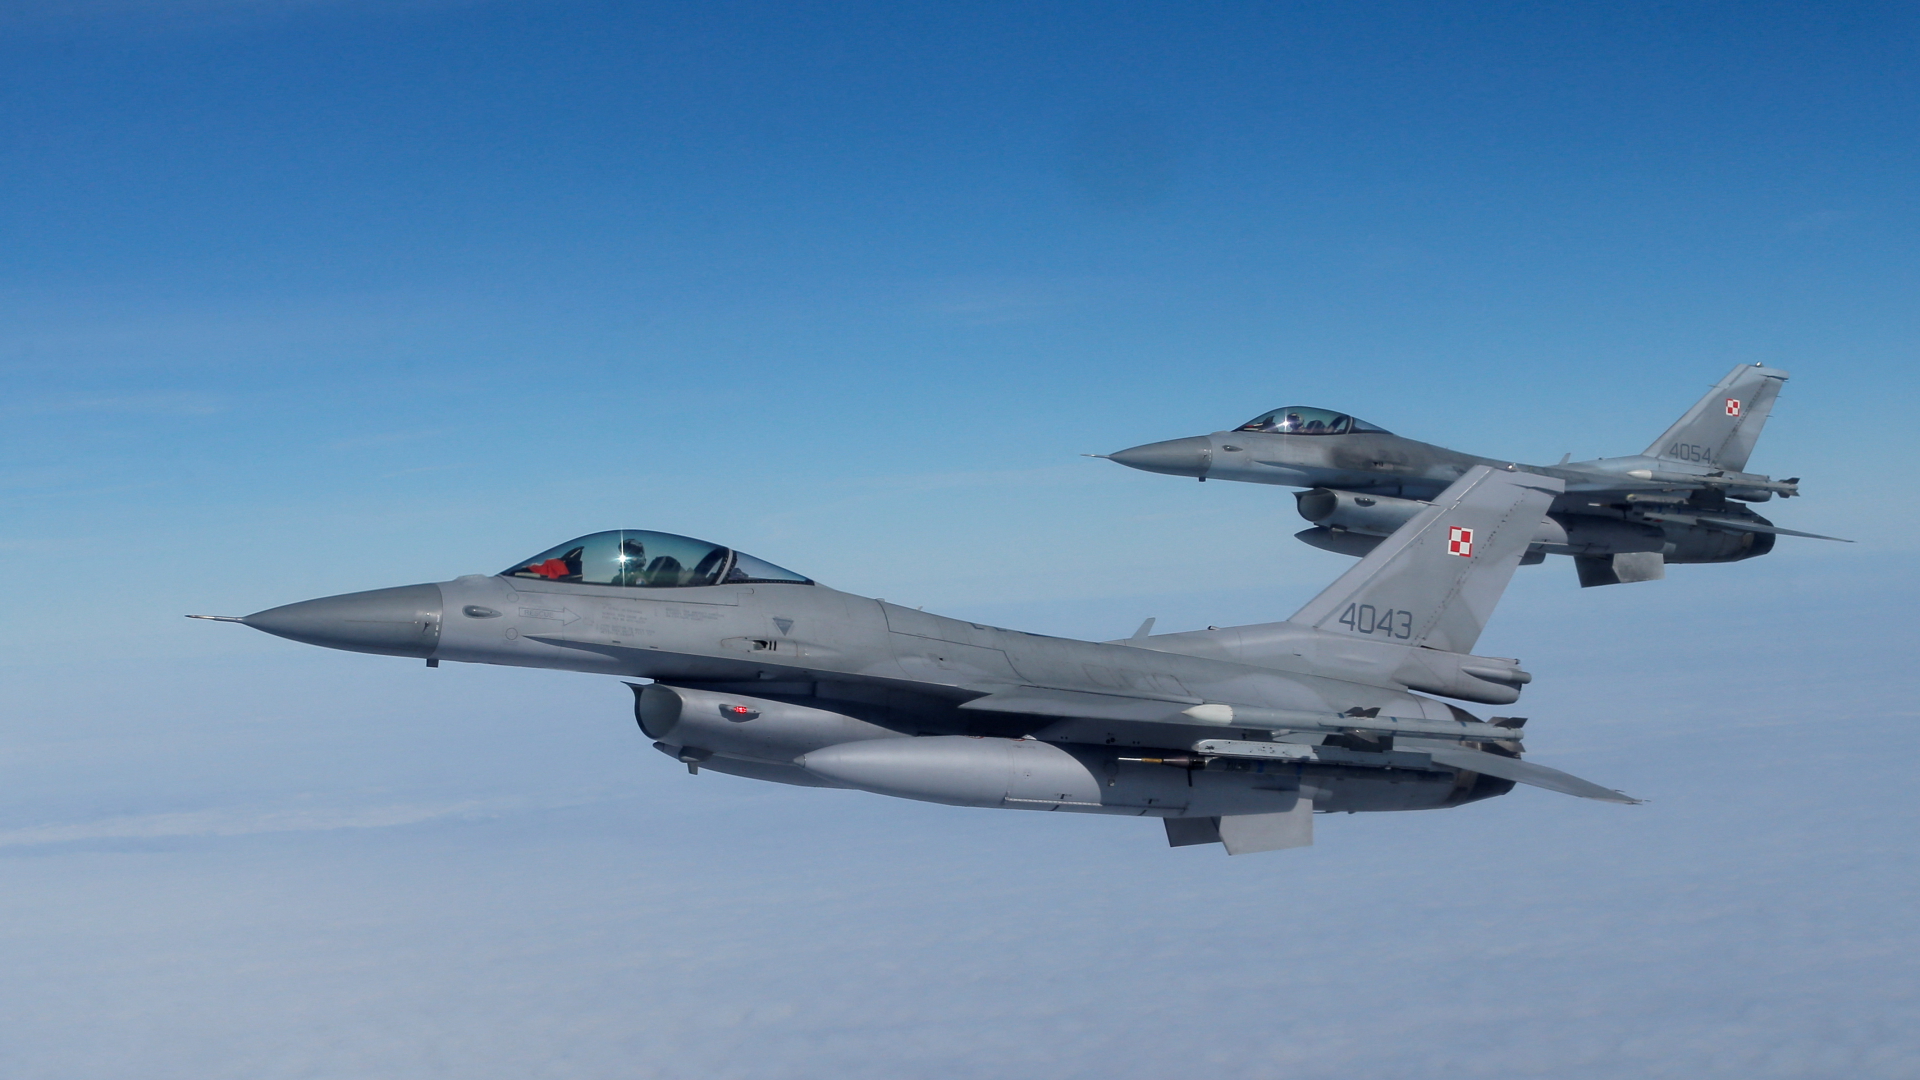 F16-Kampfflugzeuge fliegen bei einer Presseveranstaltung im polnischen Malbork.